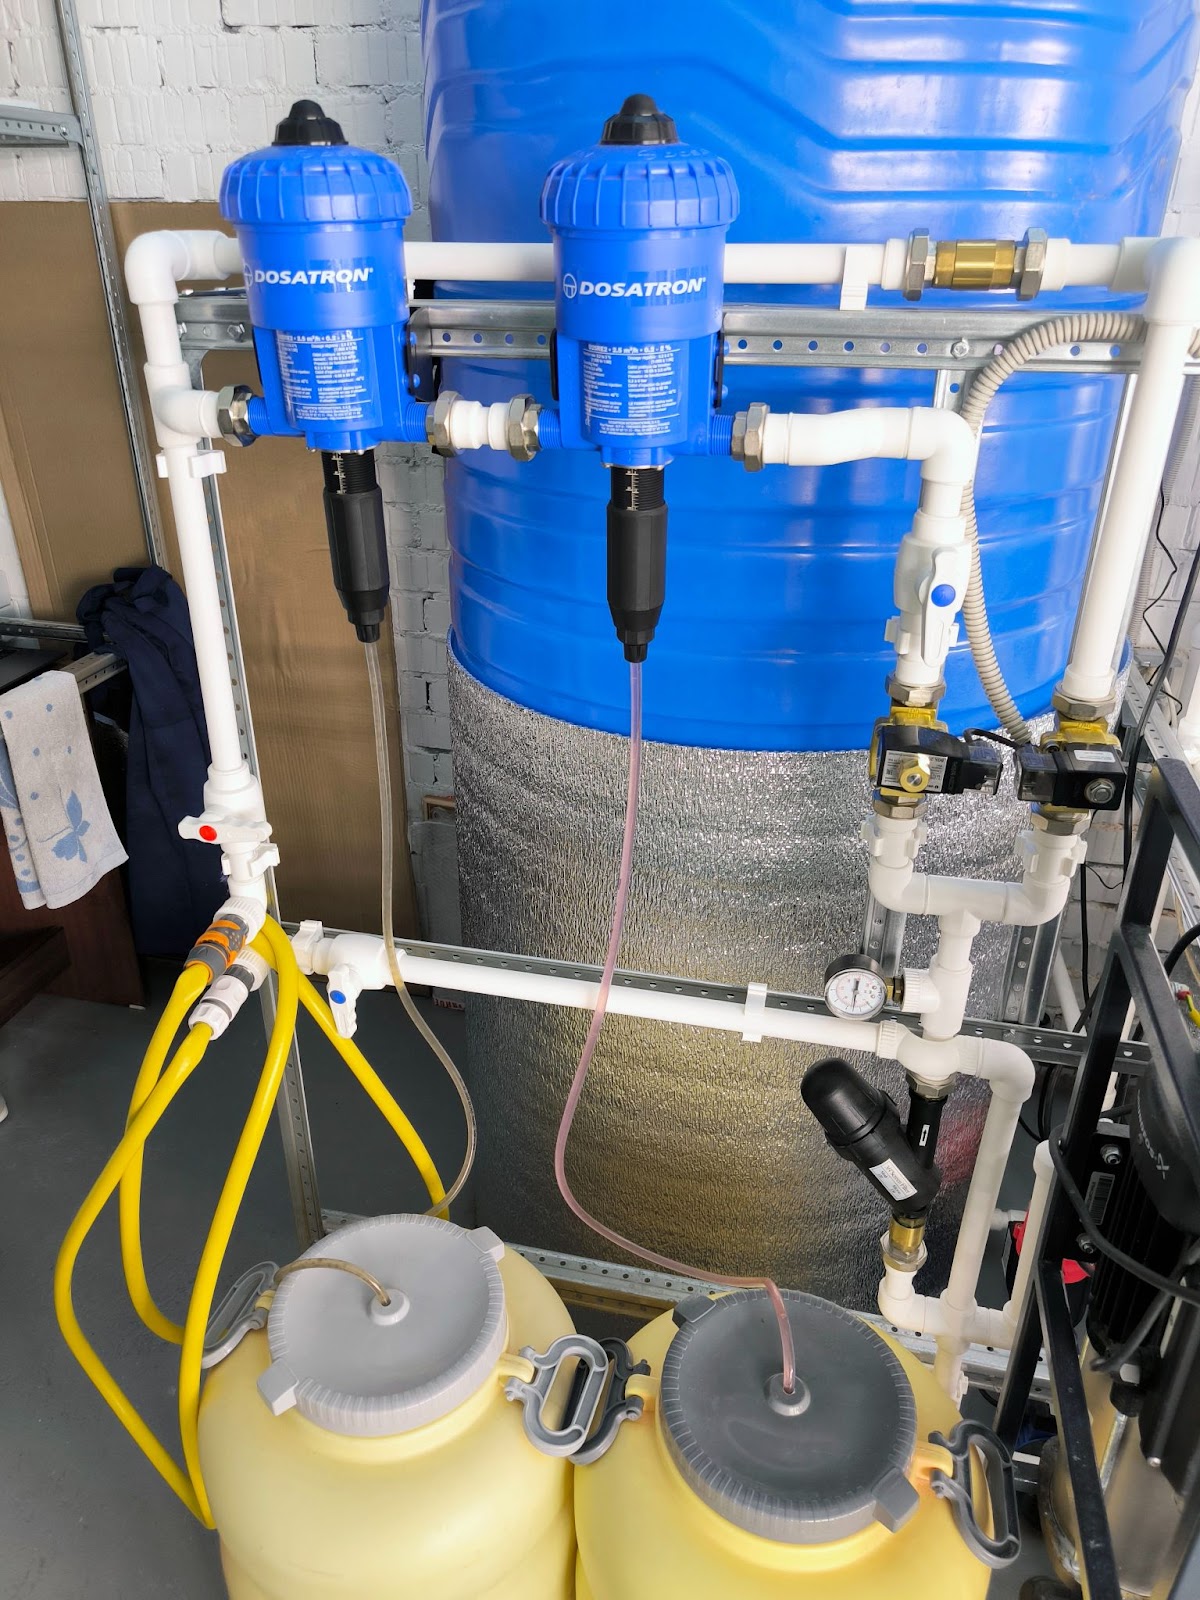 Модули Dosatron для смешивания растворов - работает за счёт механики - крутое решение, позволяет подмешивать нужный процент концентрата питательных веществ в проходящий поток воды  